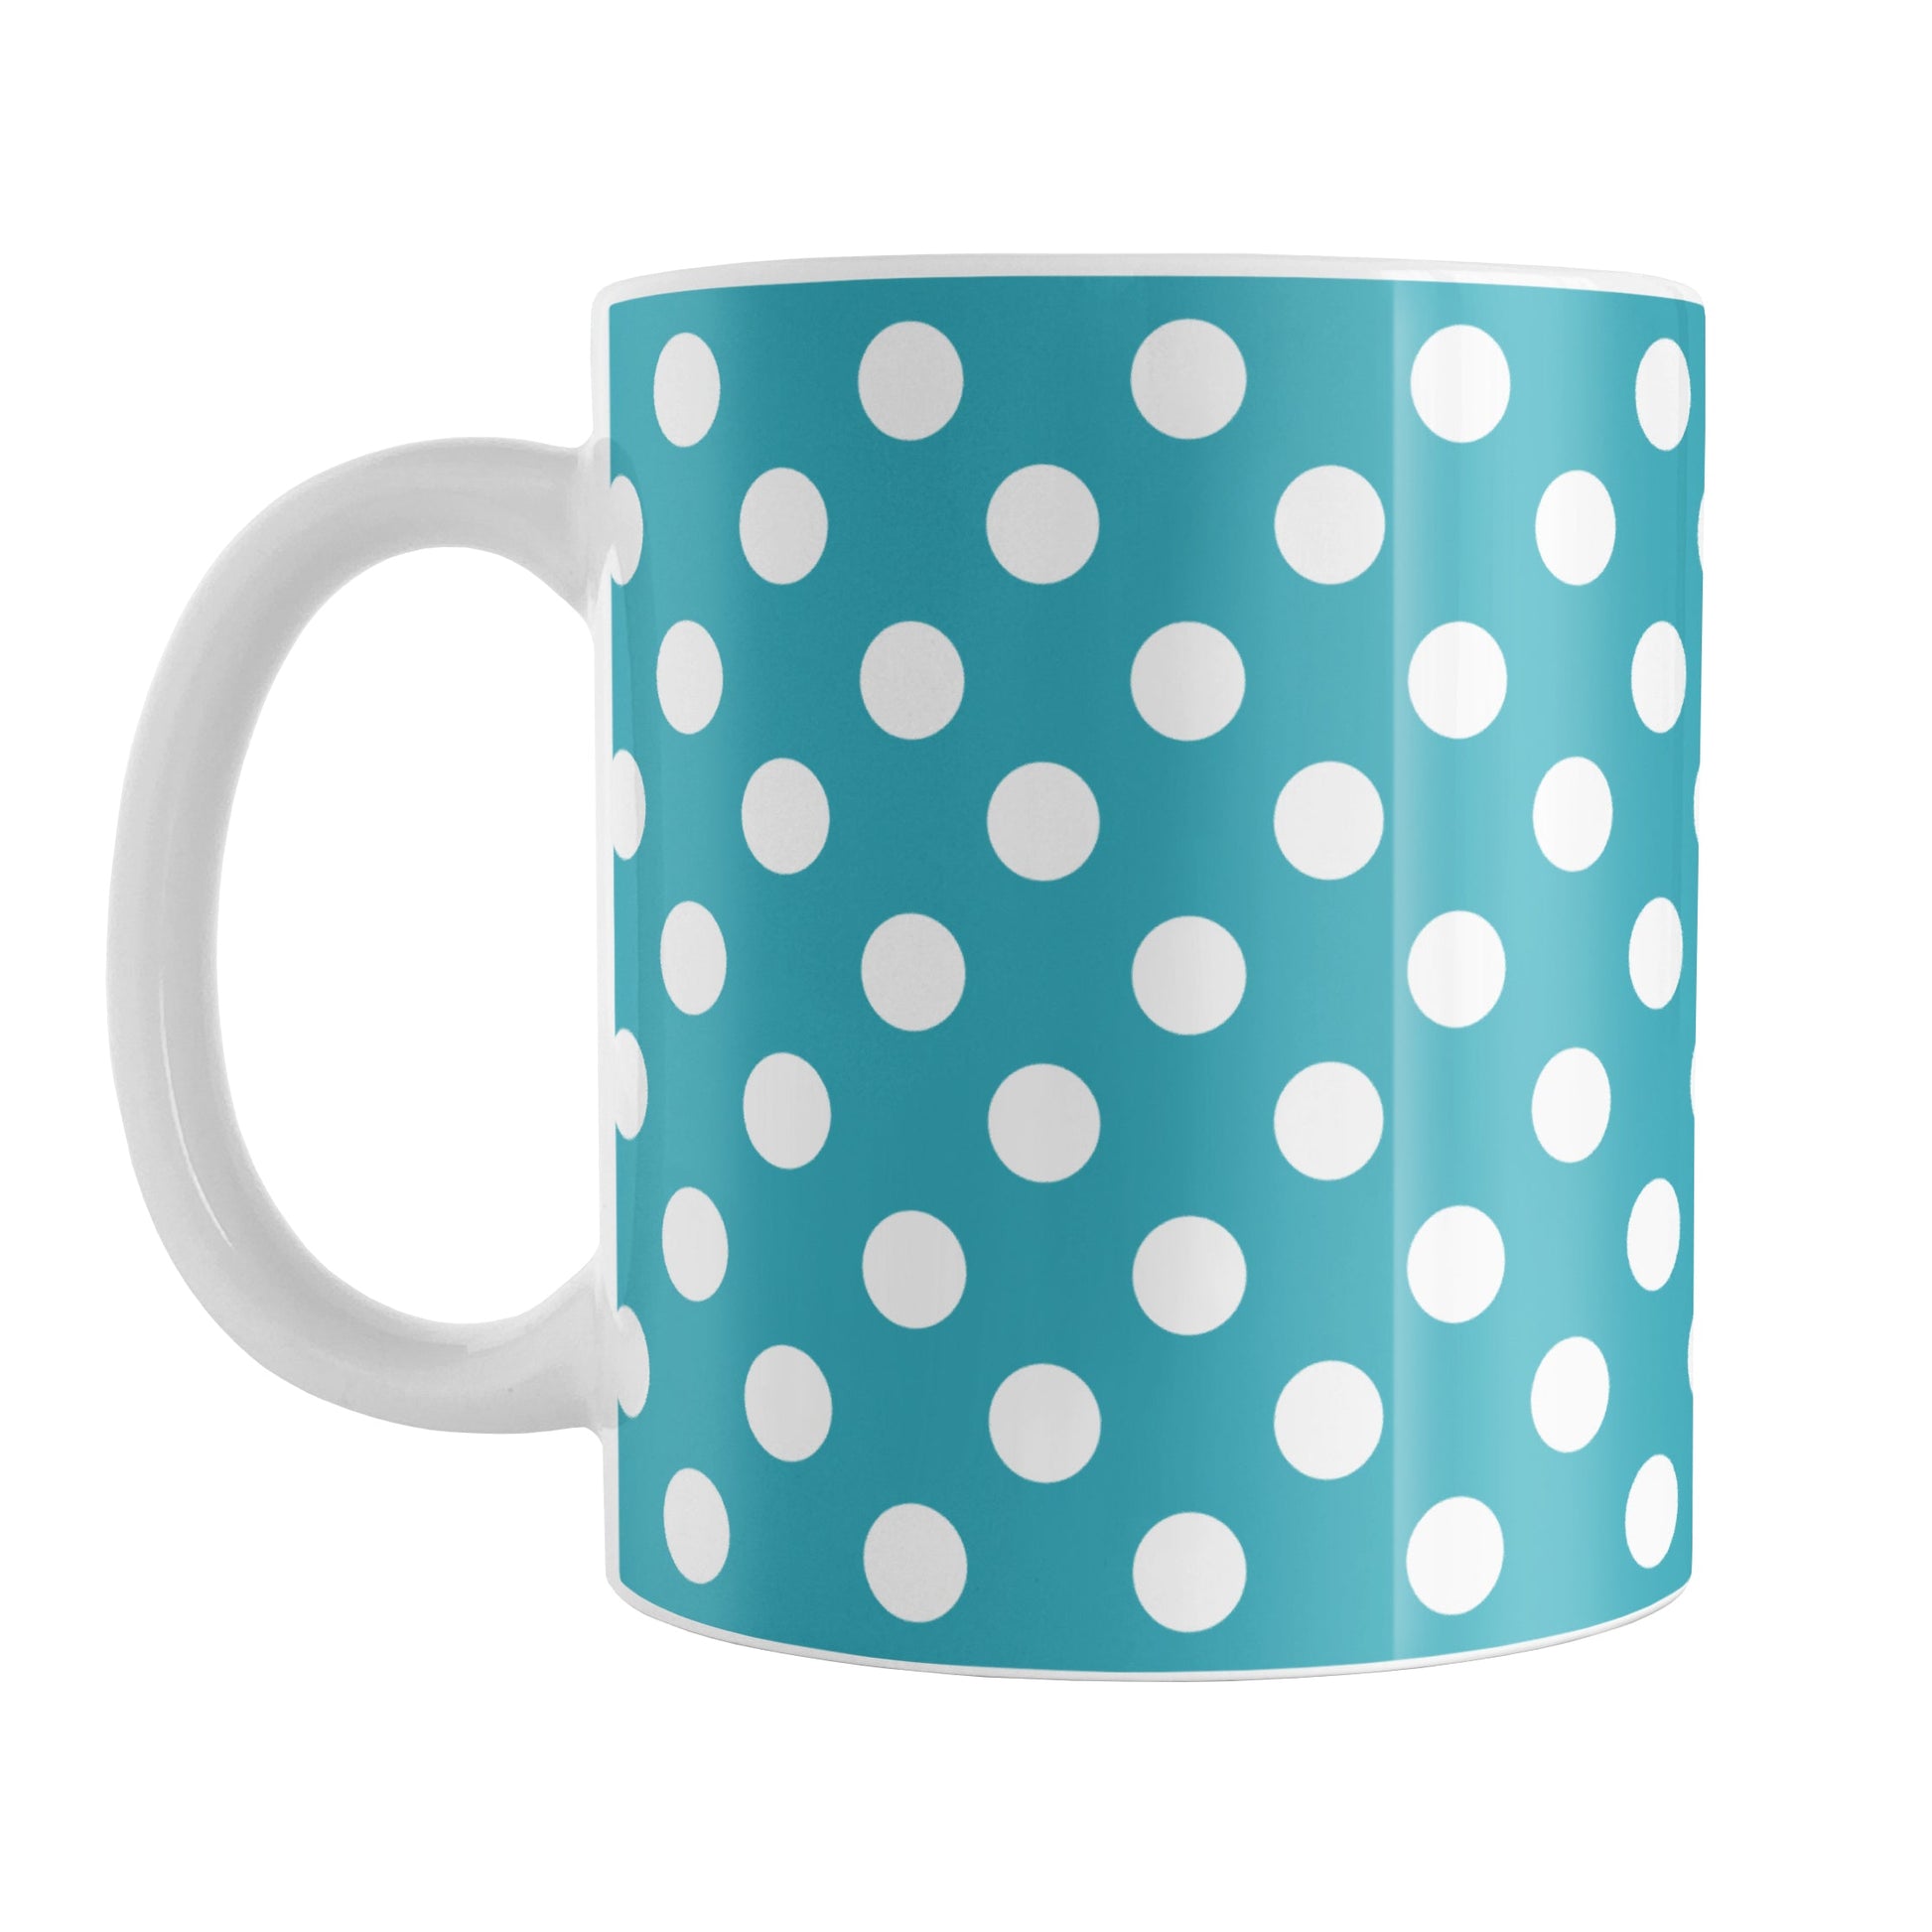 Turquoise Polka Dot Mug (11oz) at Amy's Coffee Mugs